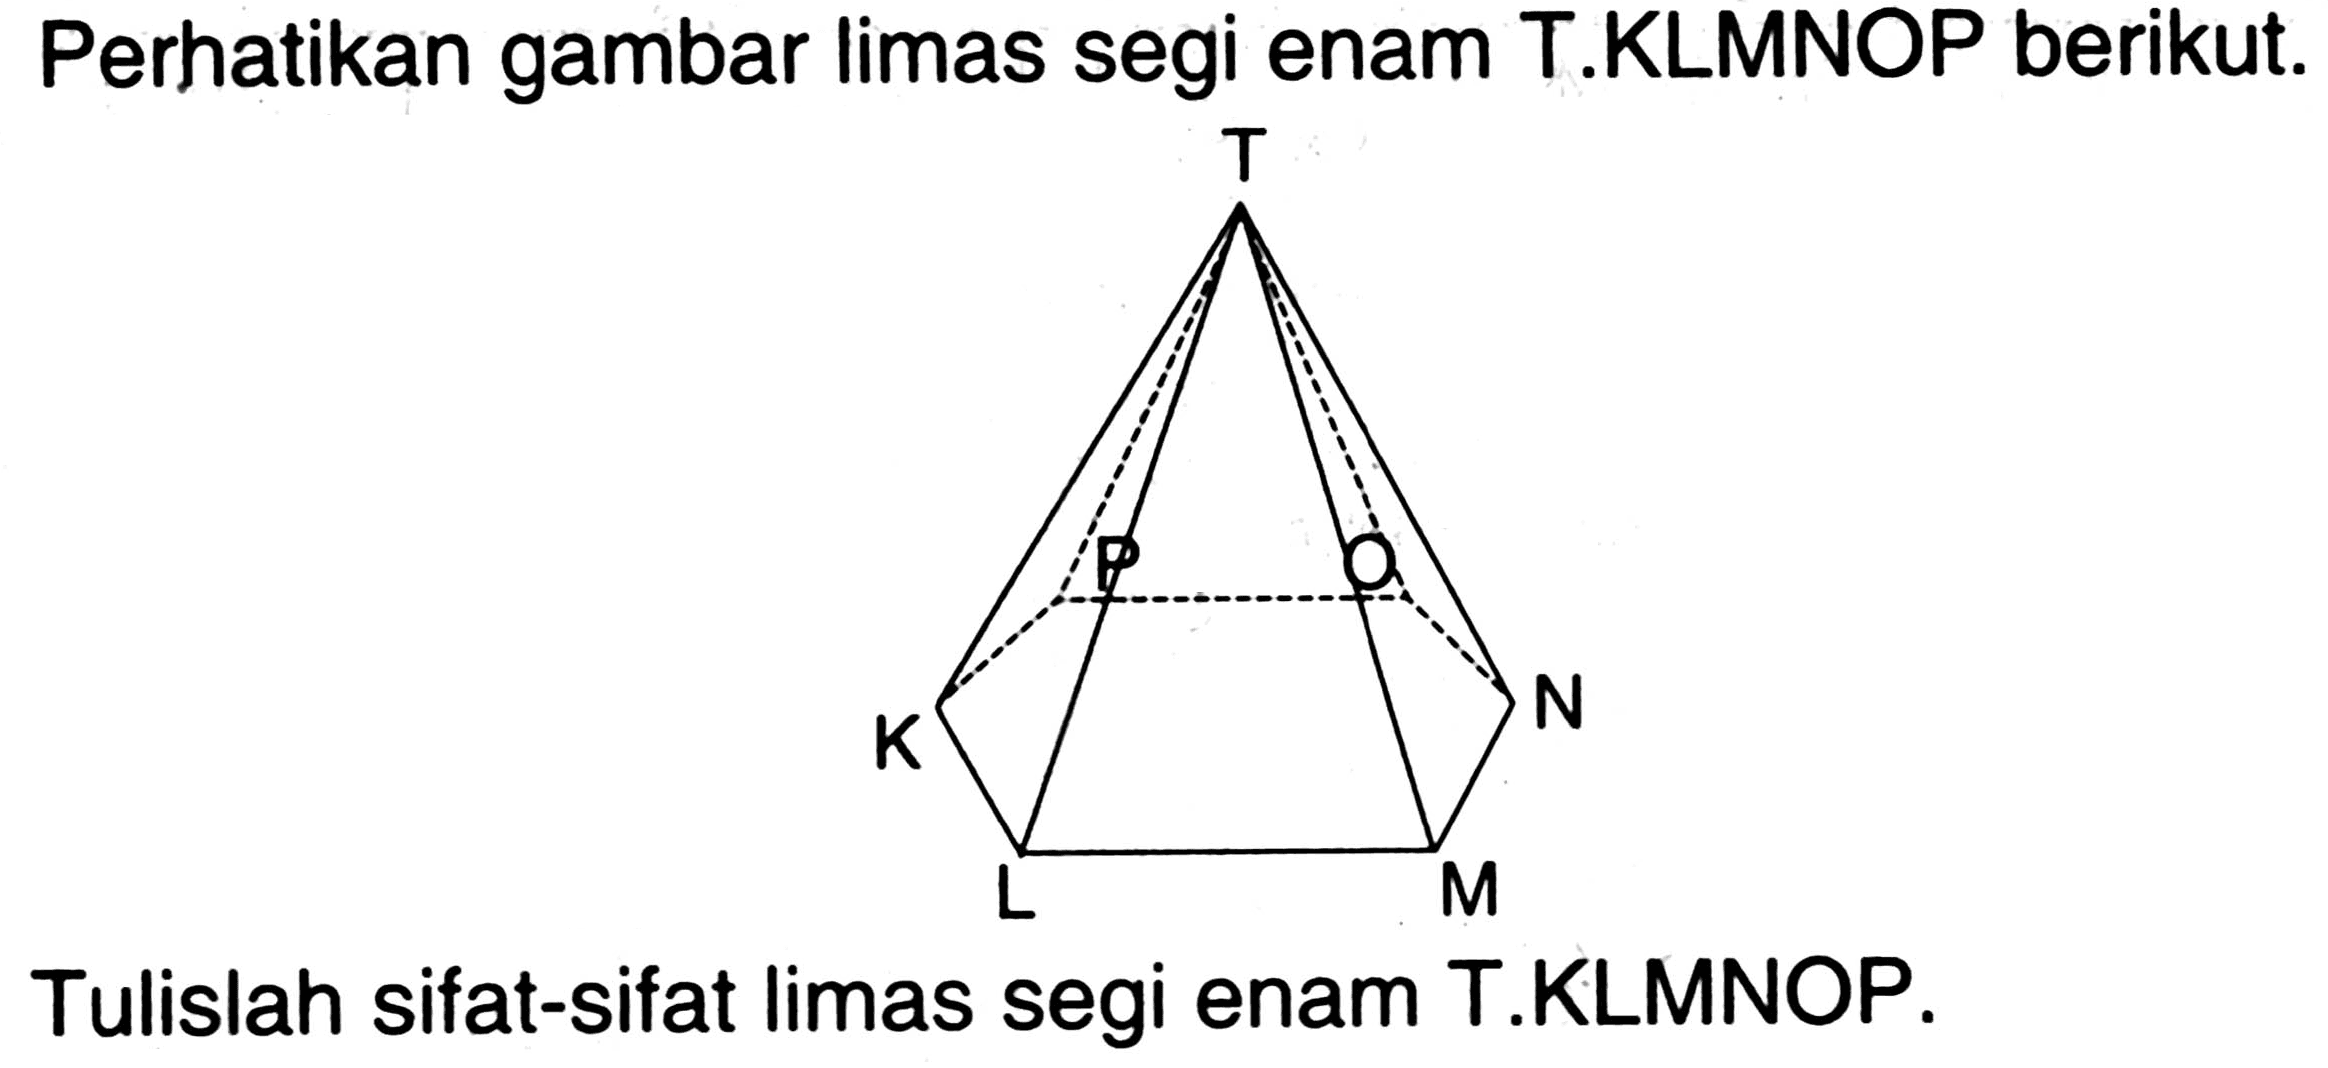 Perhatikan gambar limas segi enam T.KLMNOP berikut.
Tulislah sifat-sifat limas segi enam T.KLMNOP. K L M N O P T